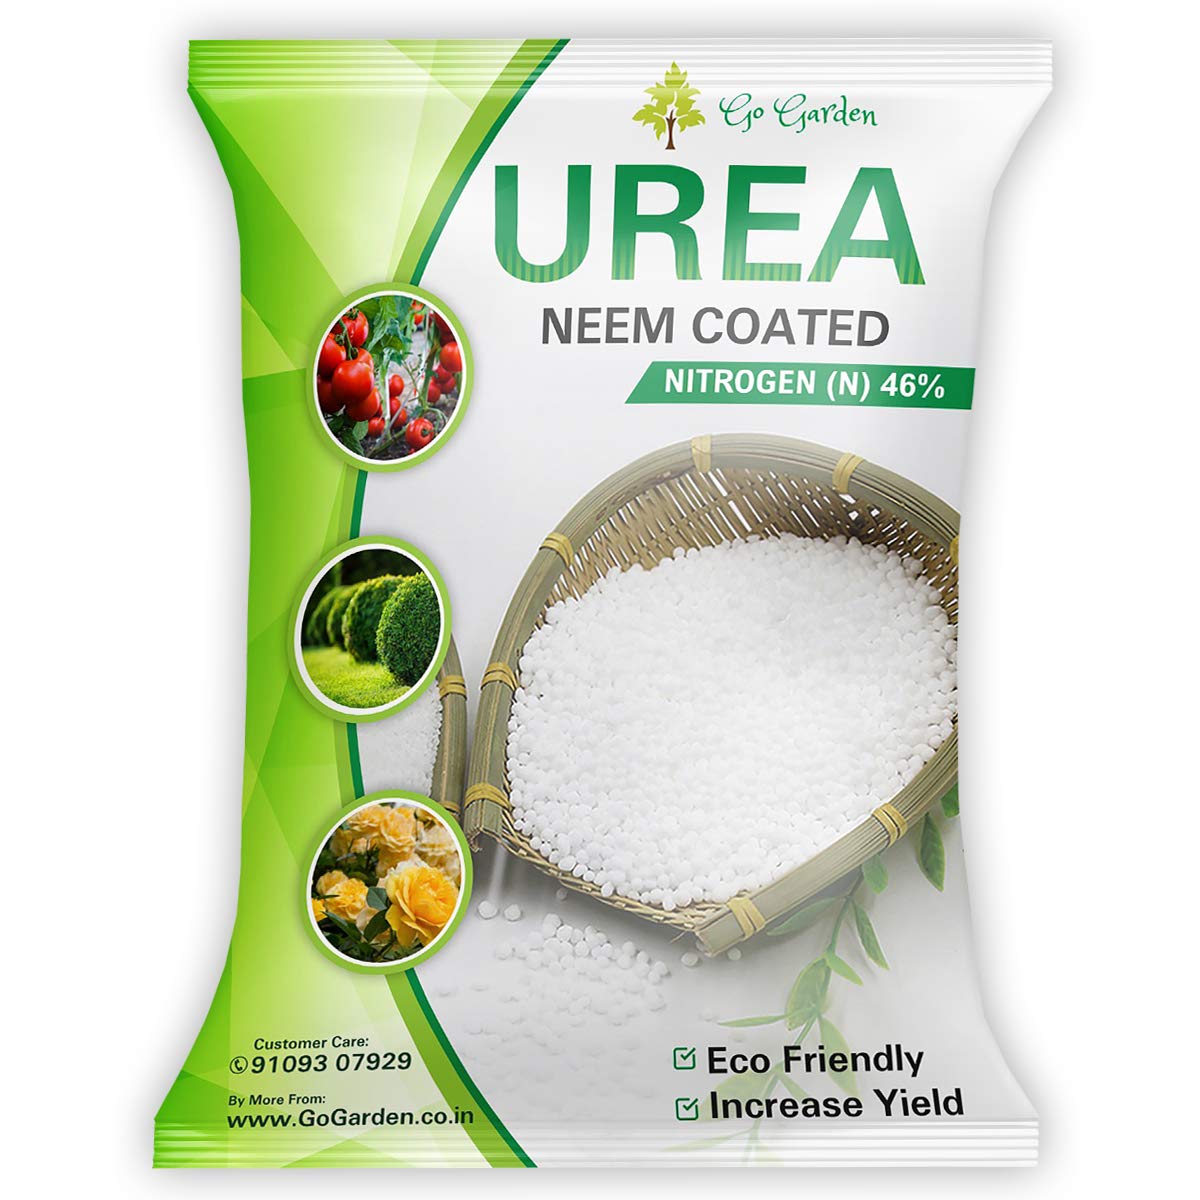 Where To Buy Urea Fertilizer